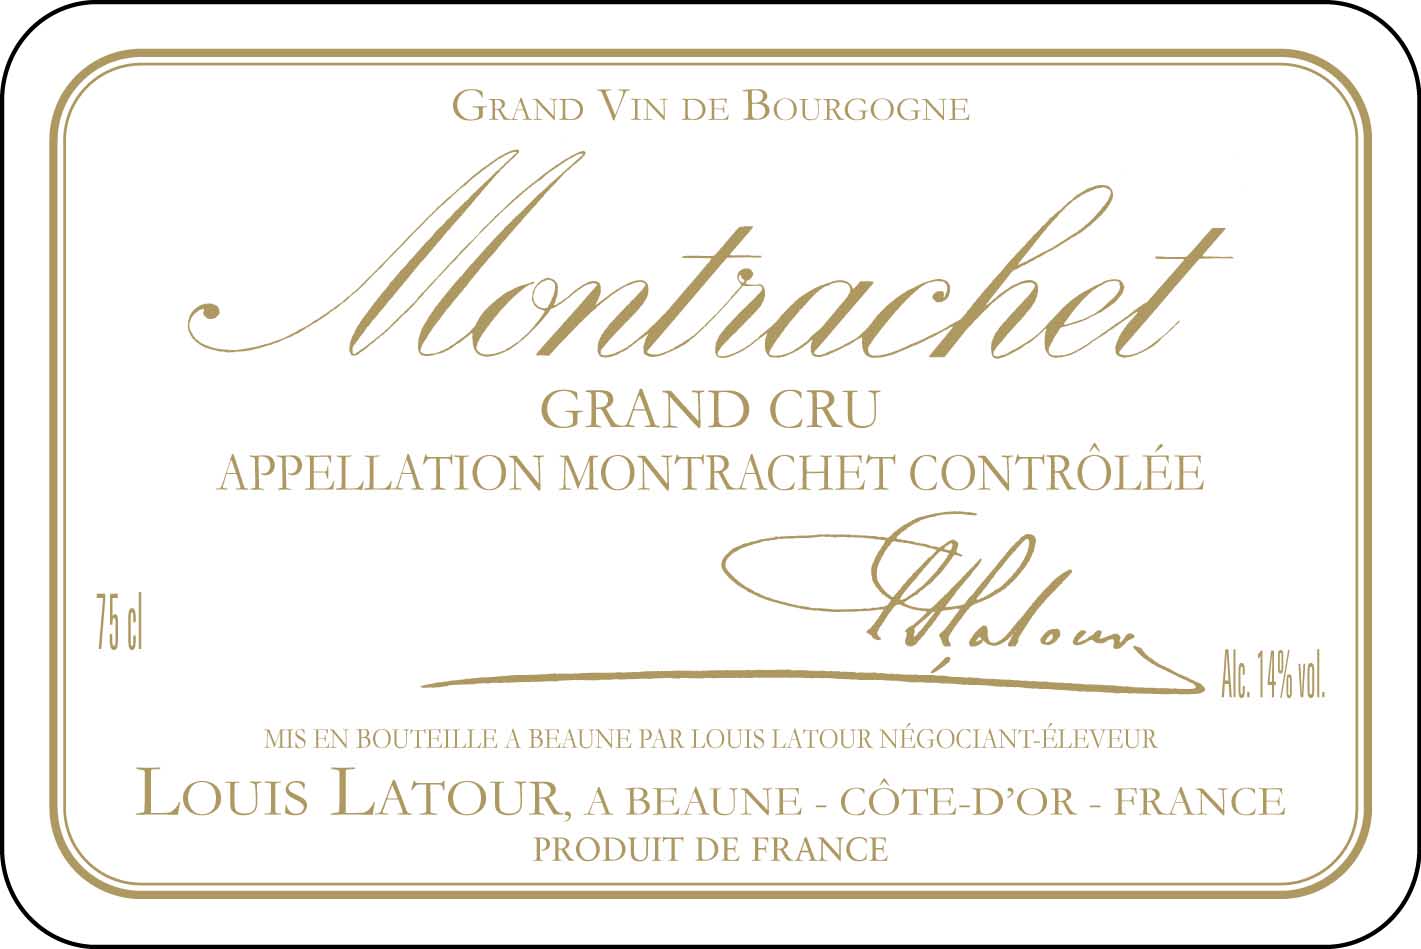 Louis Latour - Montrachet Grand Cru label